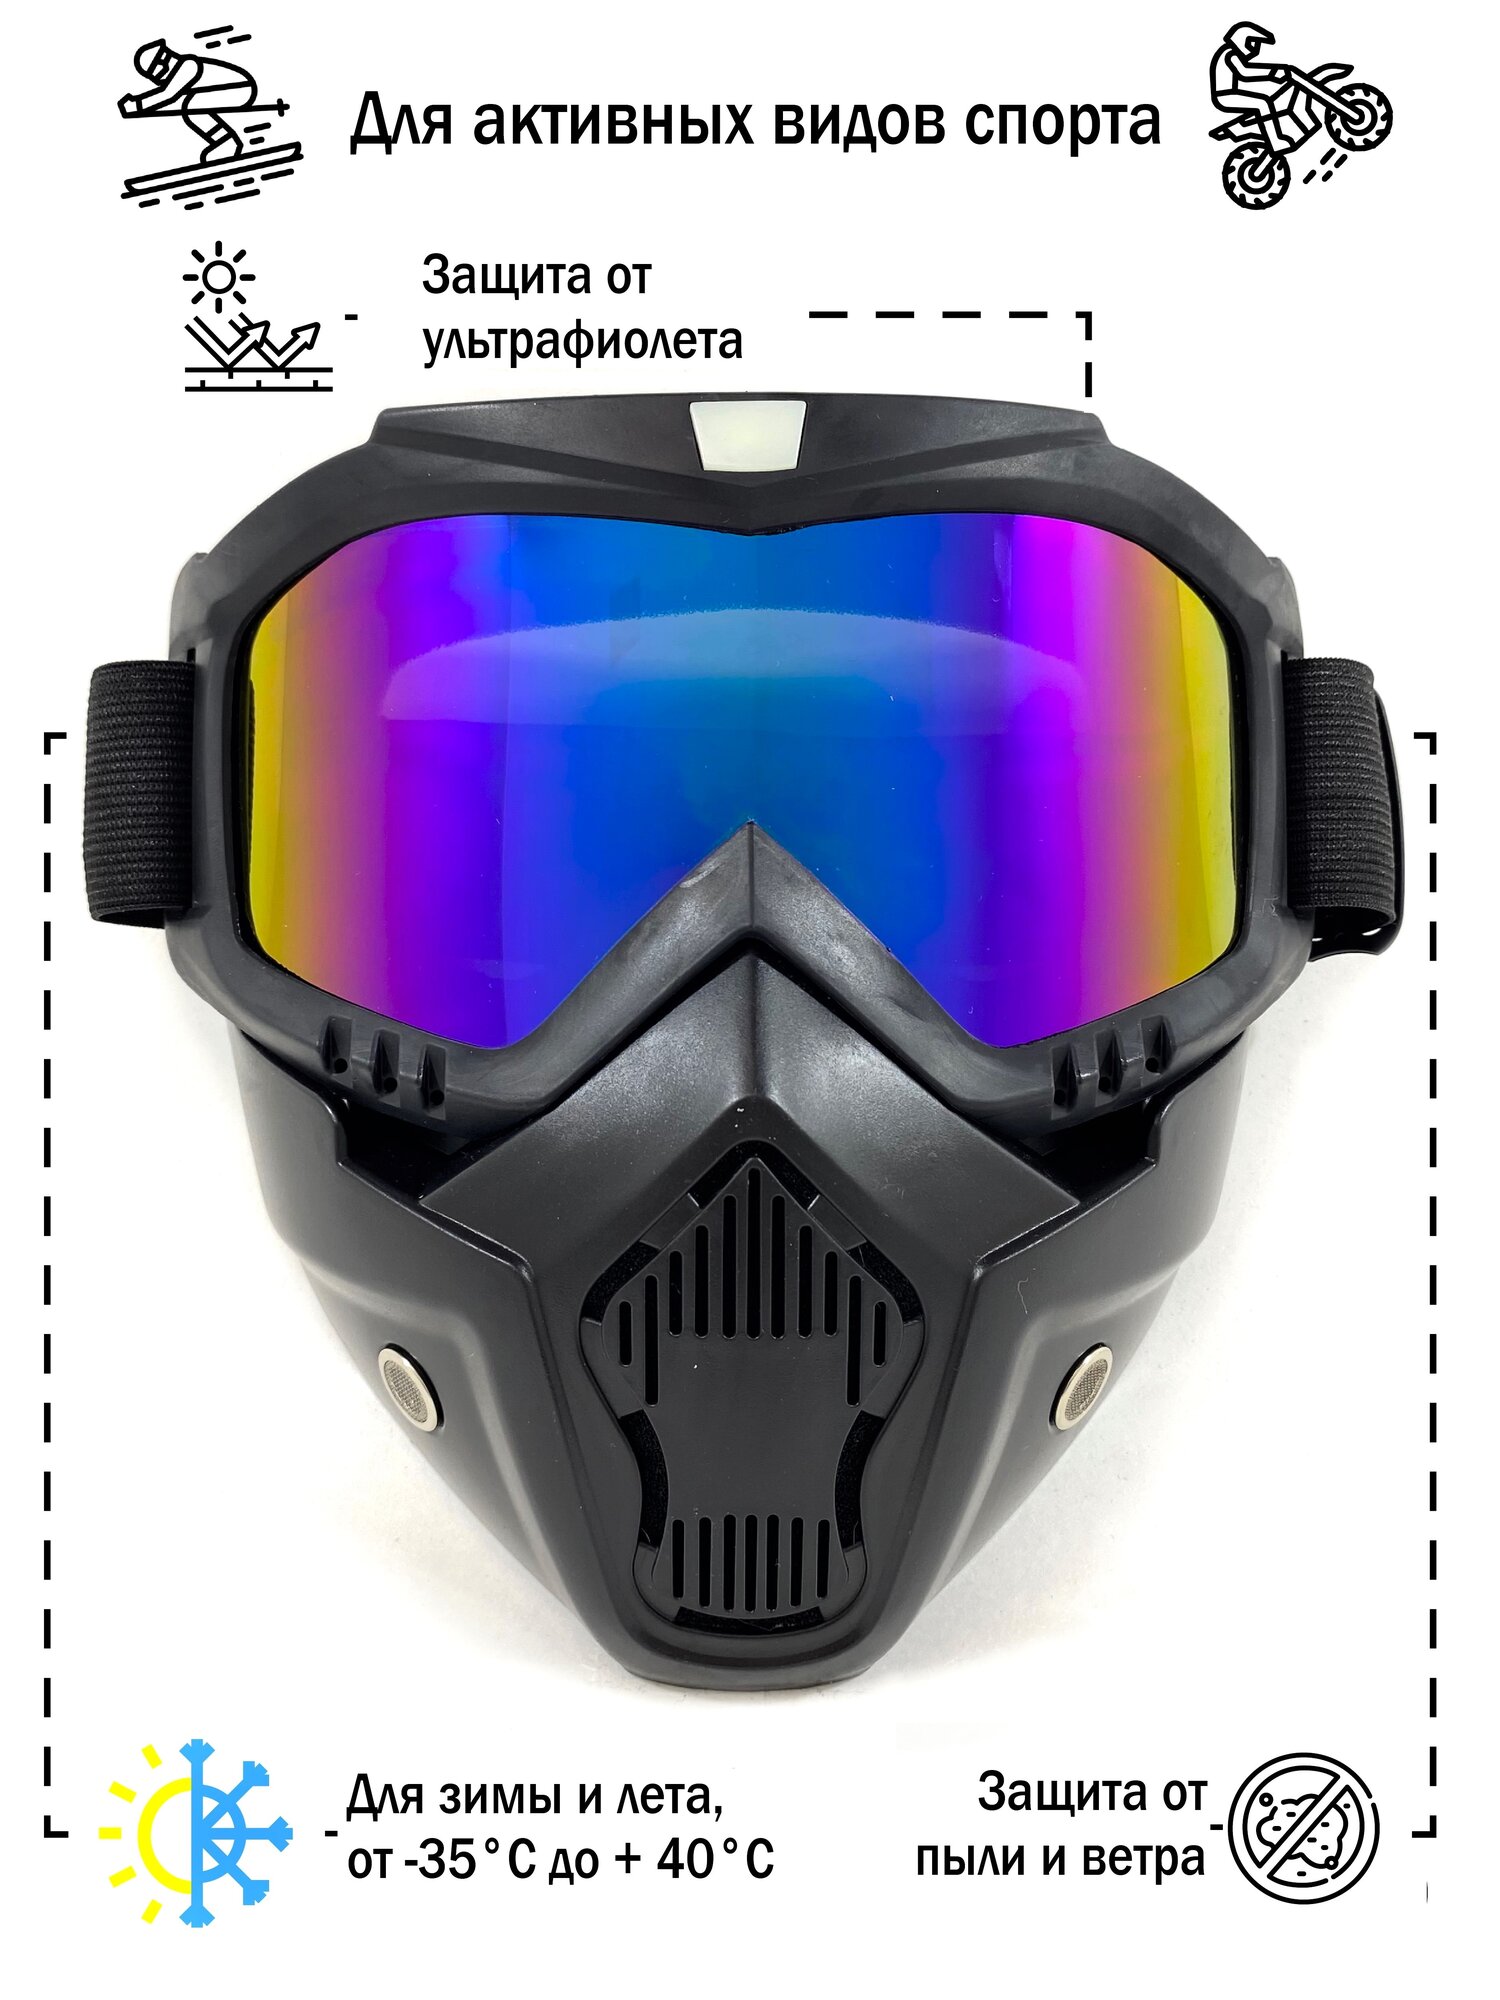 Мотоочки для кроссового шлема, питбайка, снегохода, сноуборда / маска горнолыжная, спортивная, защитная, тактическая цвет: черный, линза: хамелеон